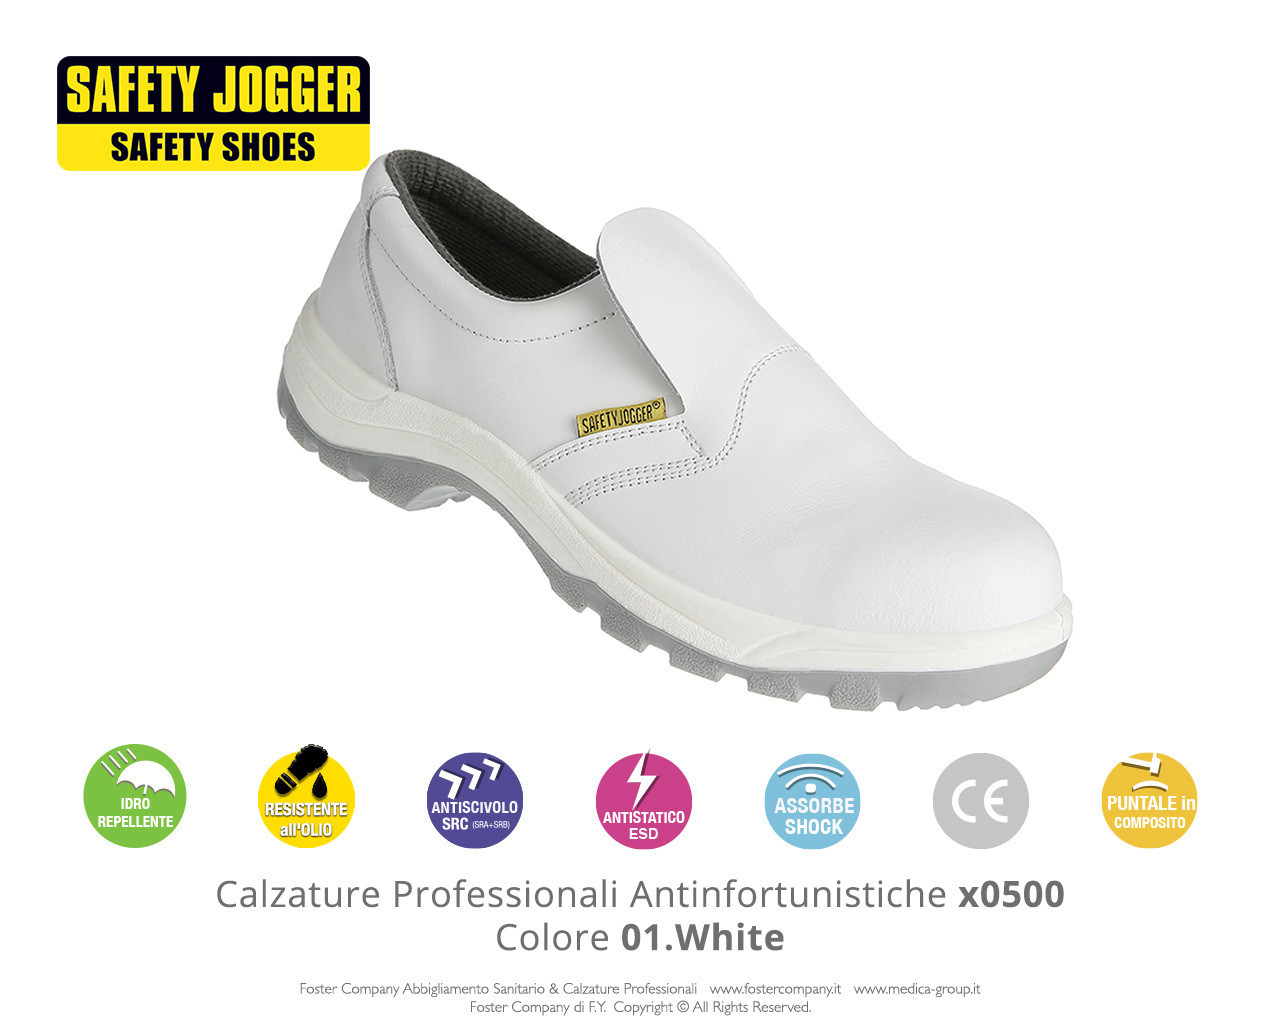 Calzature Professionali Antinfortunistiche con Puntale di Protezione Safety Jogger X0500 Colore 01. White